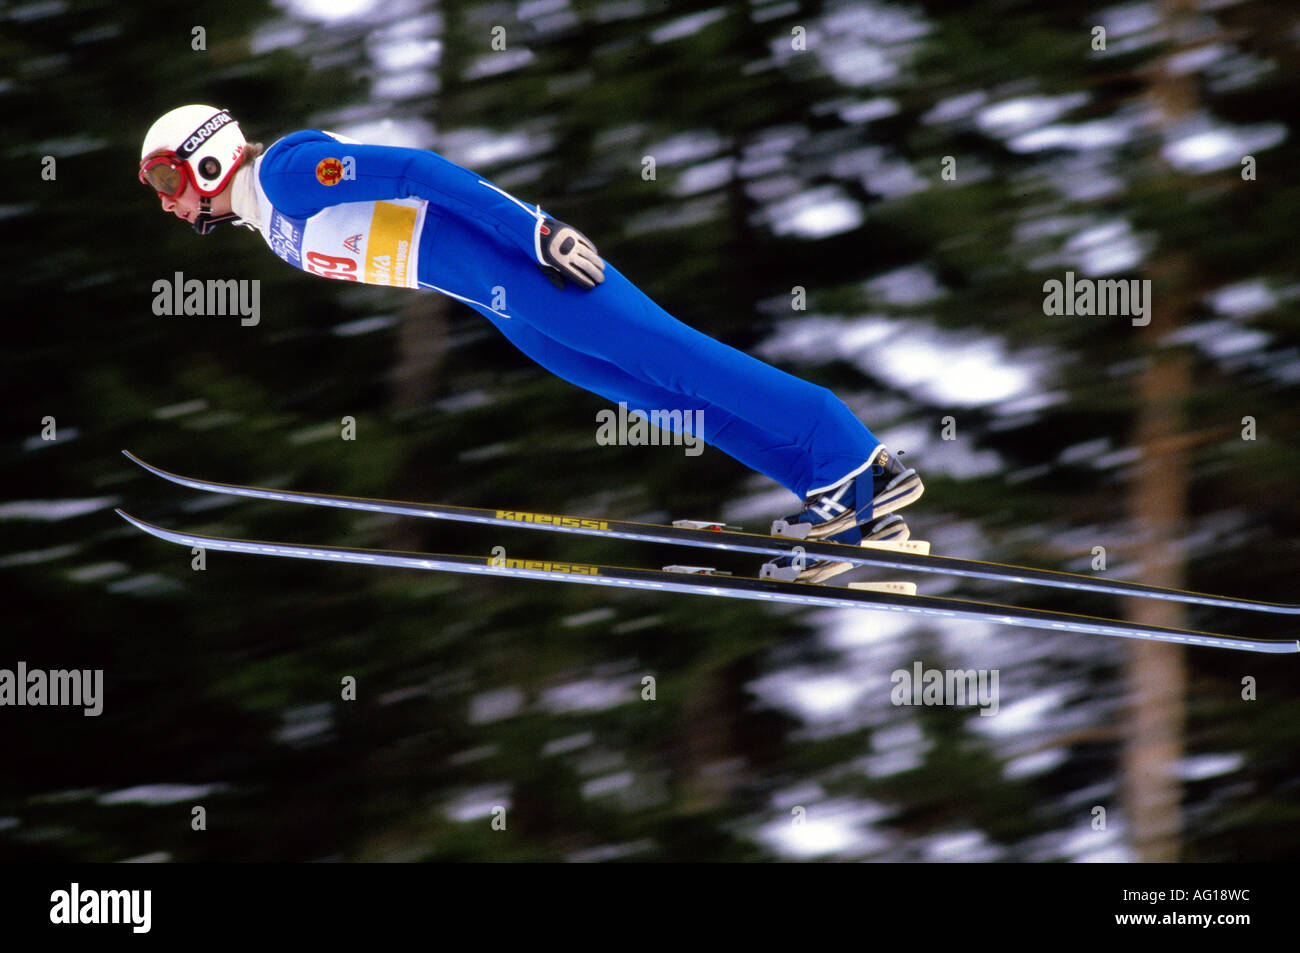 German Athlete Ski Jumping Stock Photos German Athlete Ski for ski jumping athletes regarding Property